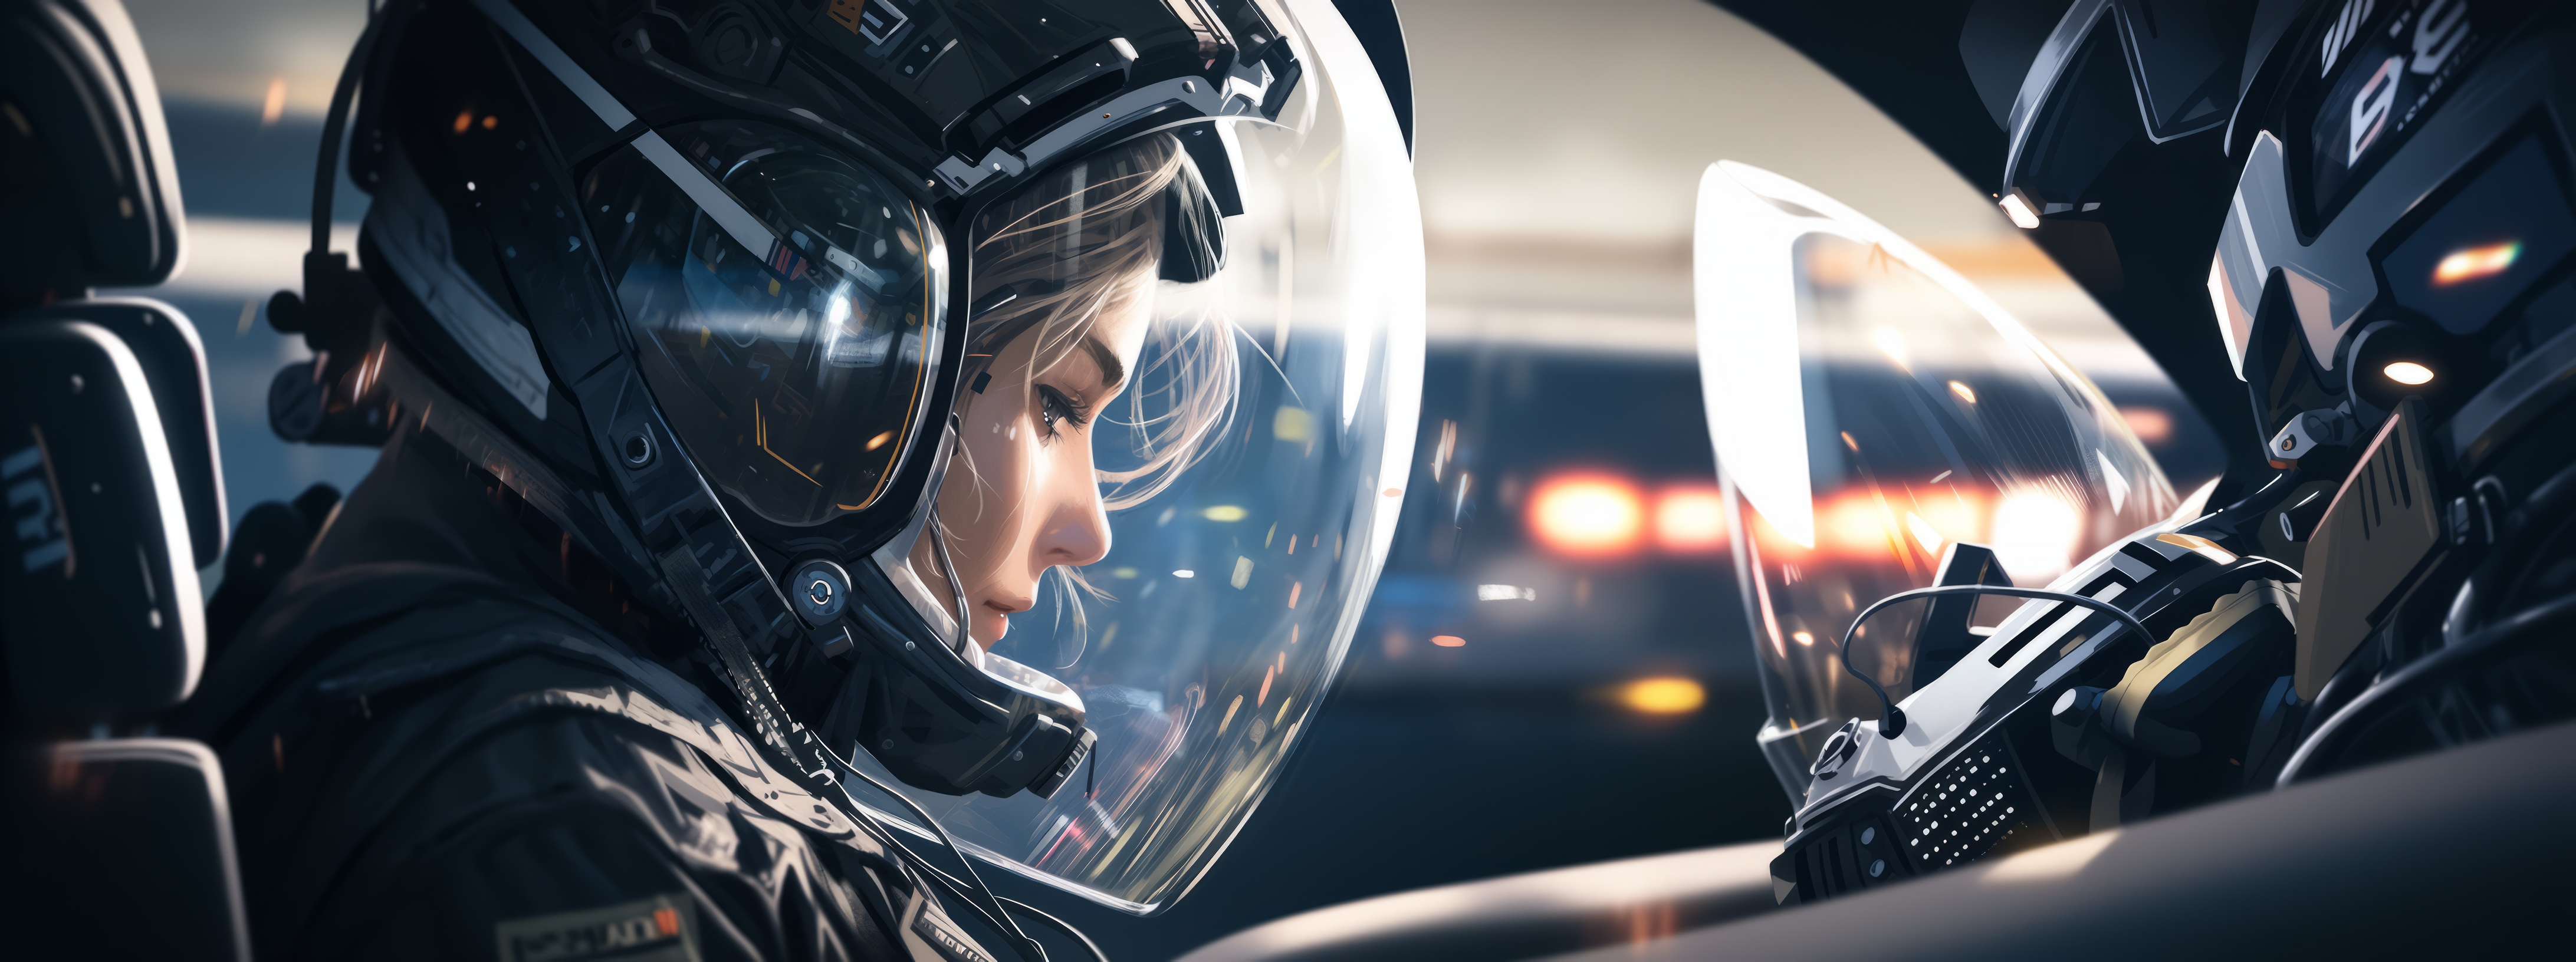 General 4368x1632 AI art women illustration science fiction pilot cockpit spacesuit helmet